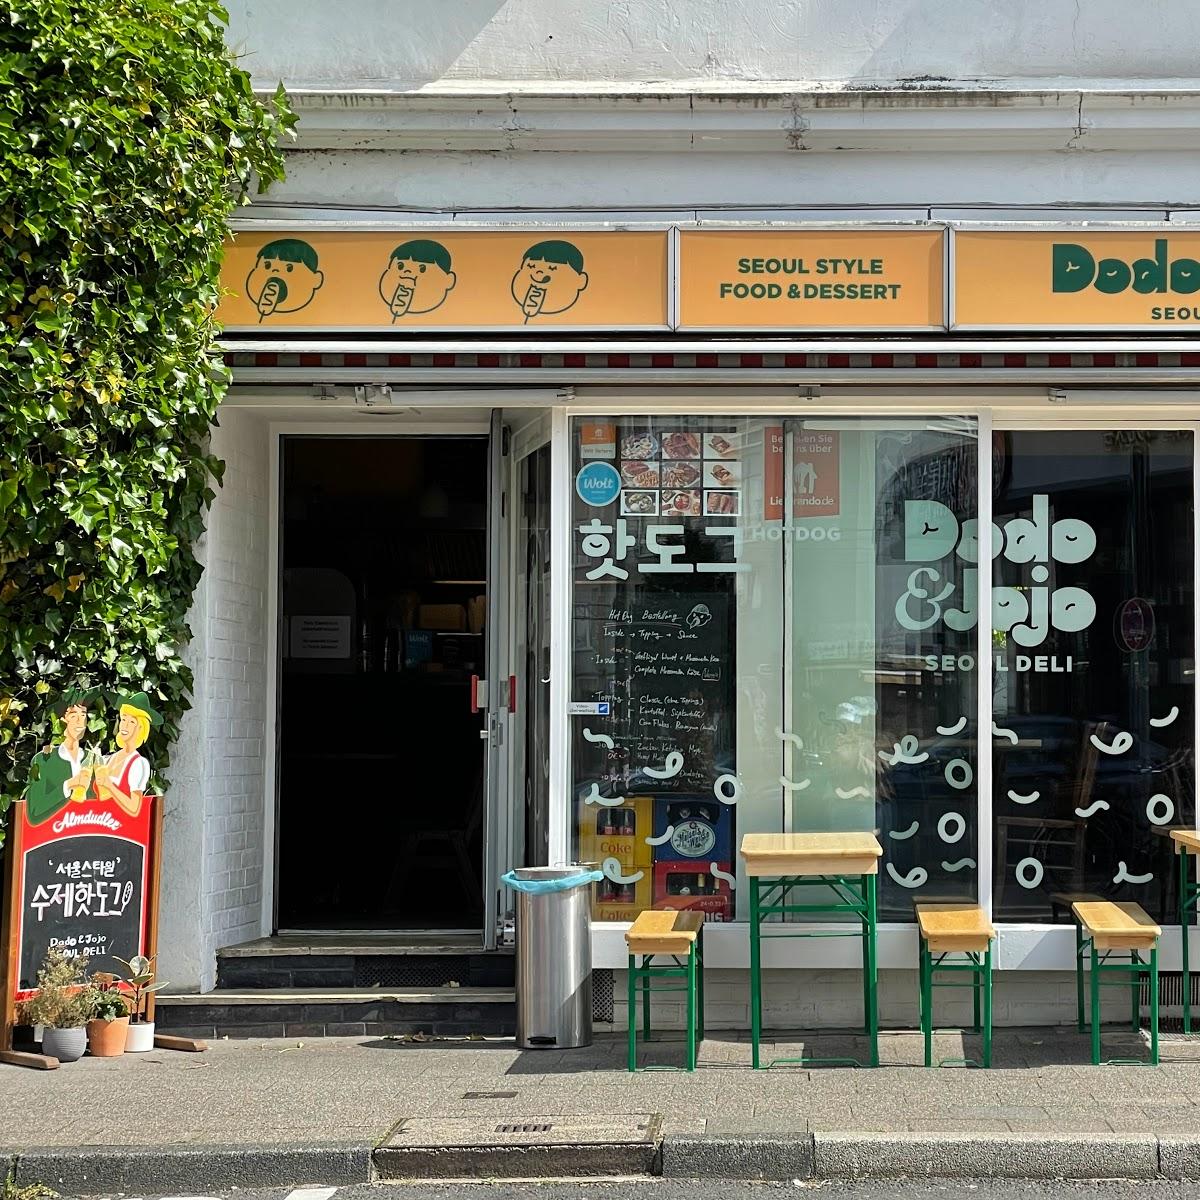 Restaurant "Dodo&Jojo Seoul Deli" in Düsseldorf